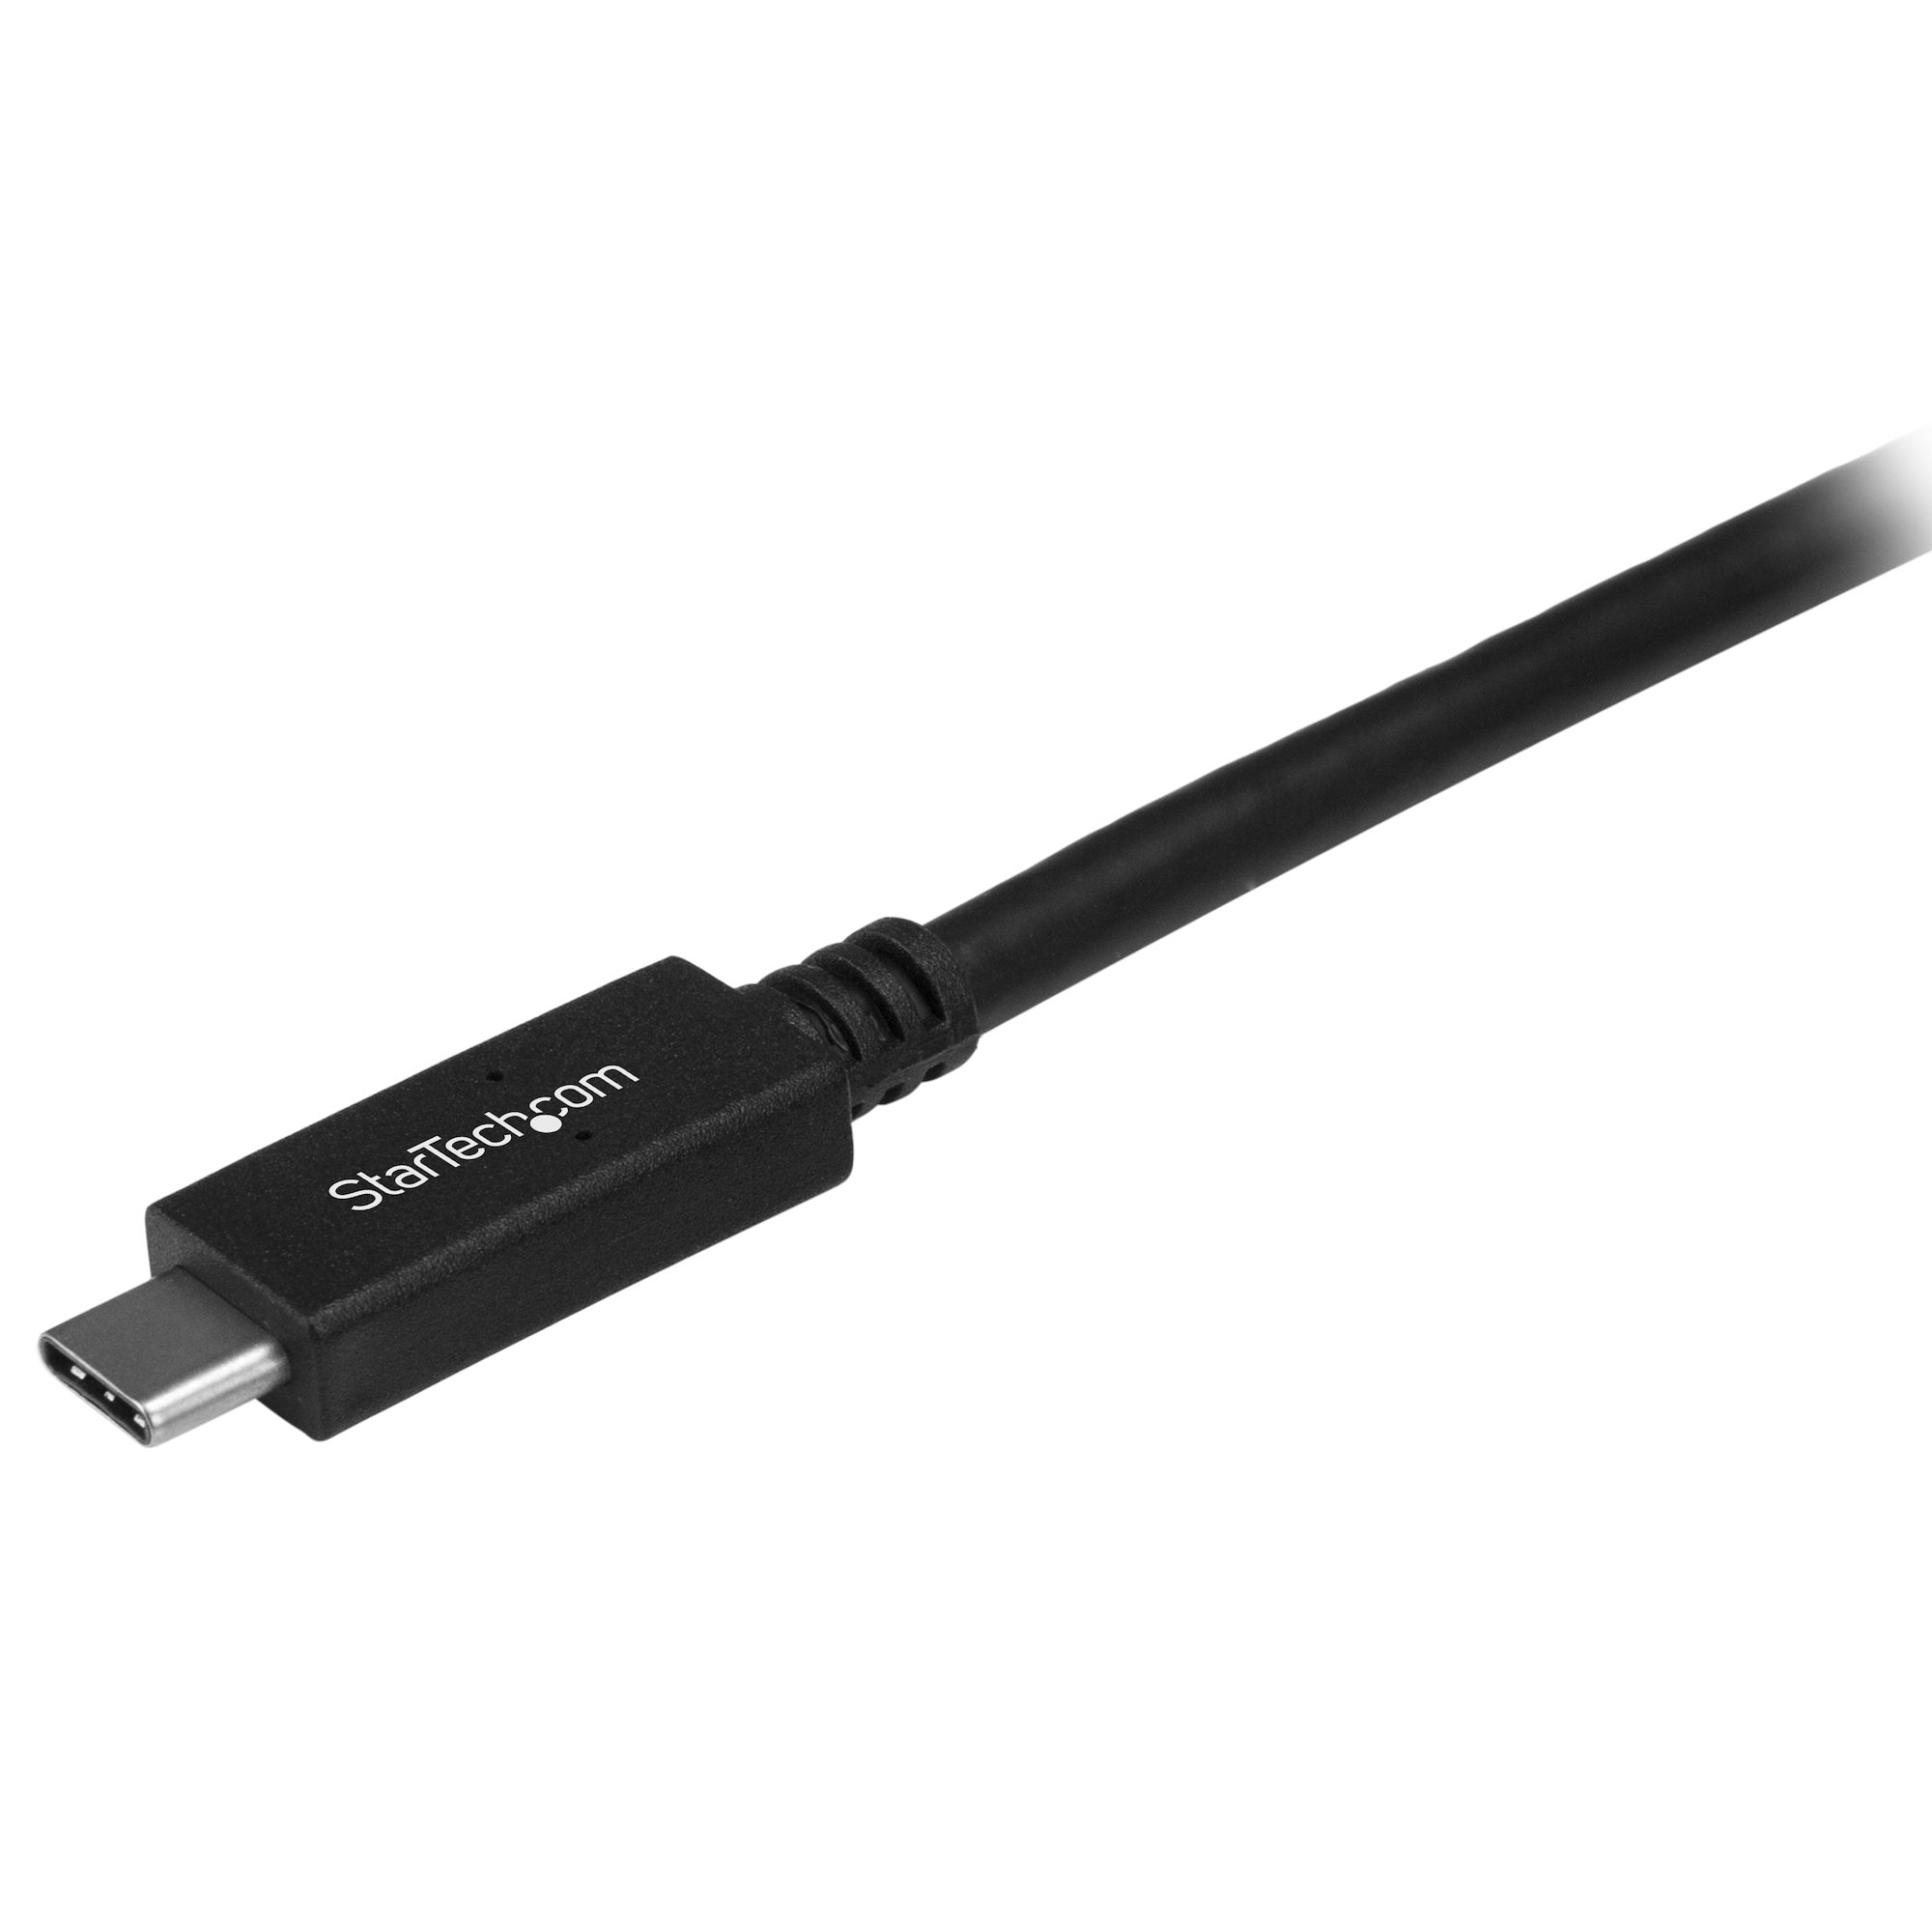 Cables USB Erard CABLE USBC vers USBA 3.0 (M) 3 m - 722455